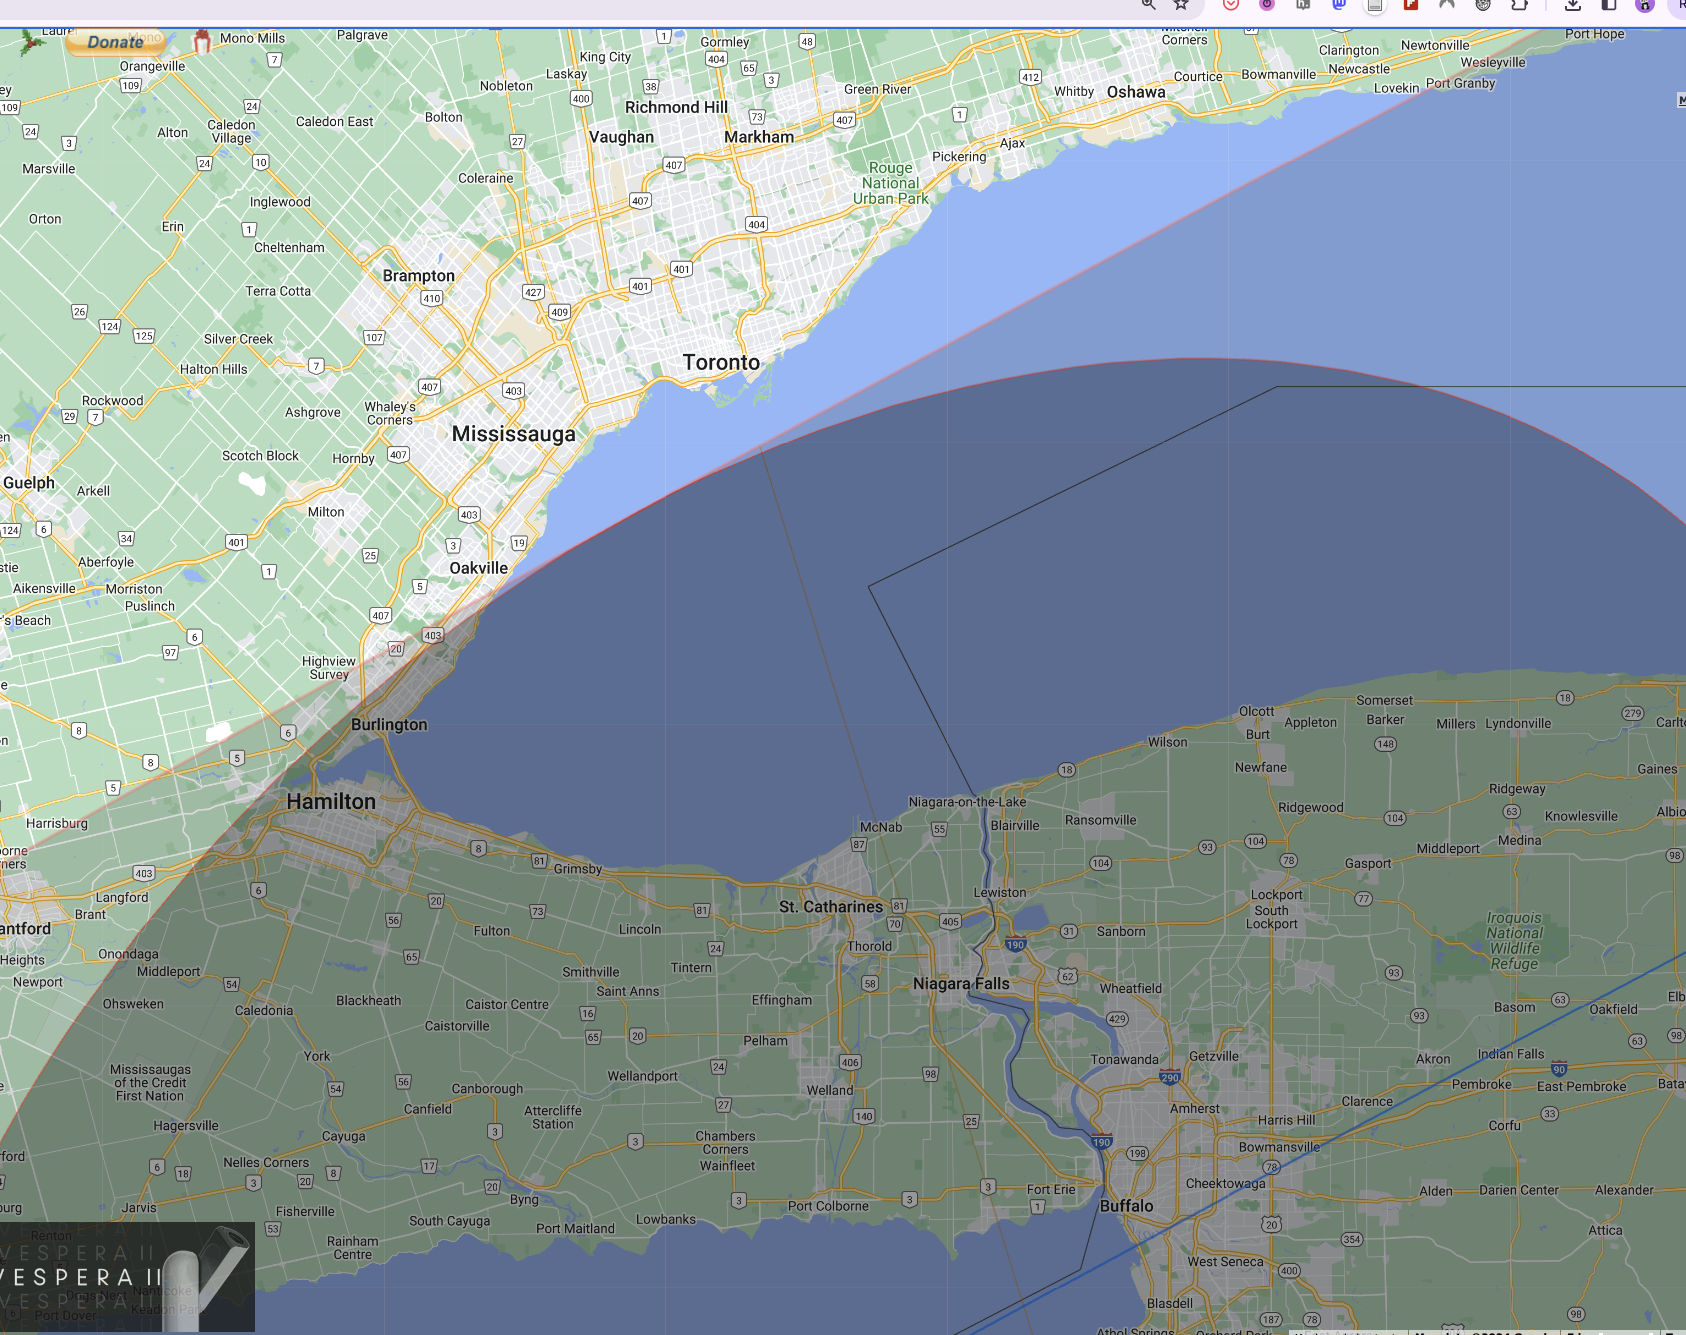 Toronto zoom 1 - the golden horshoe